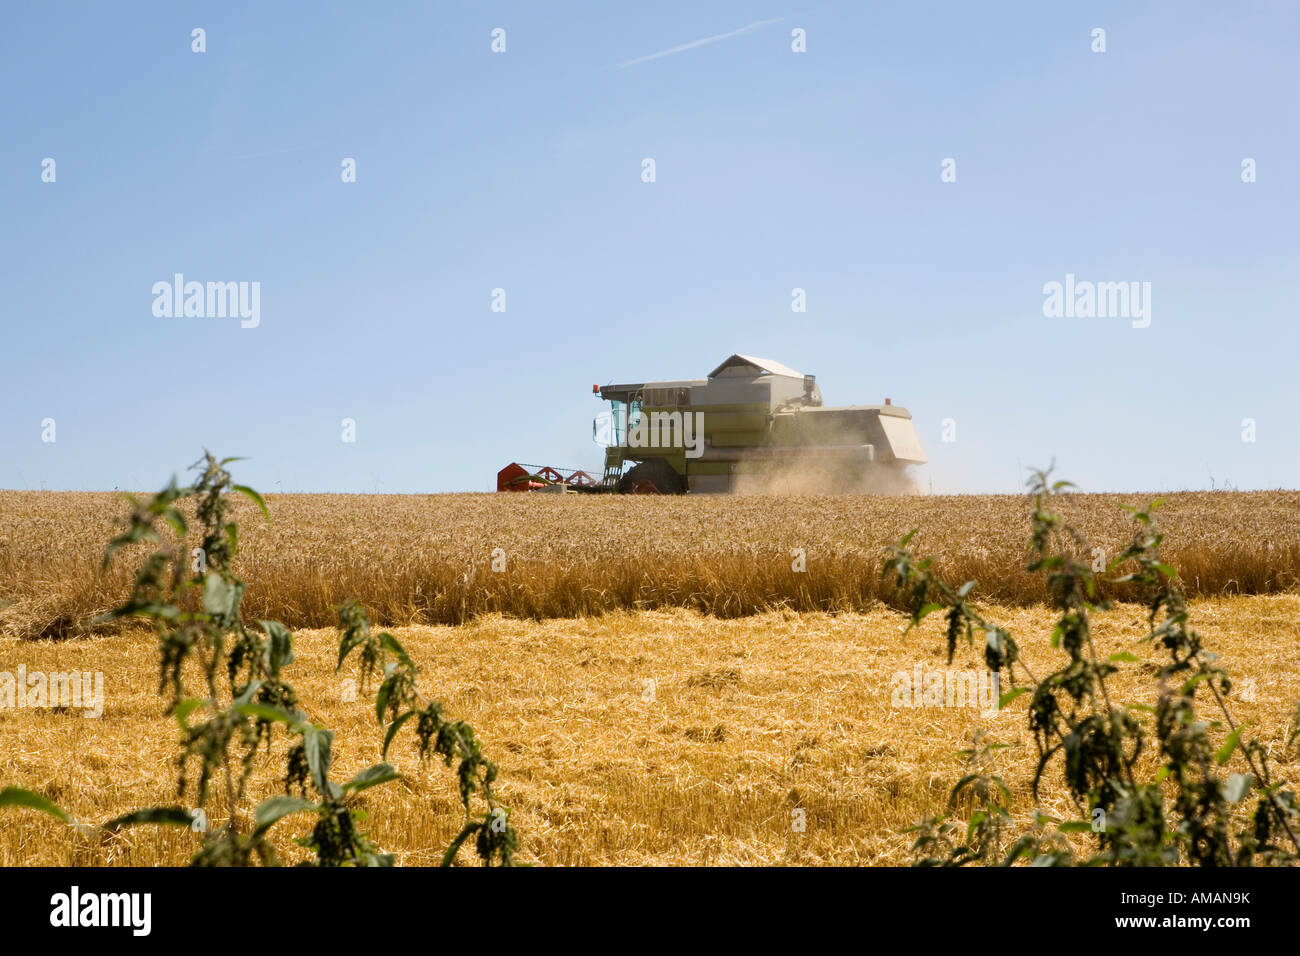 Une moissonneuse-batteuse dans un champ de blé Banque D'Images